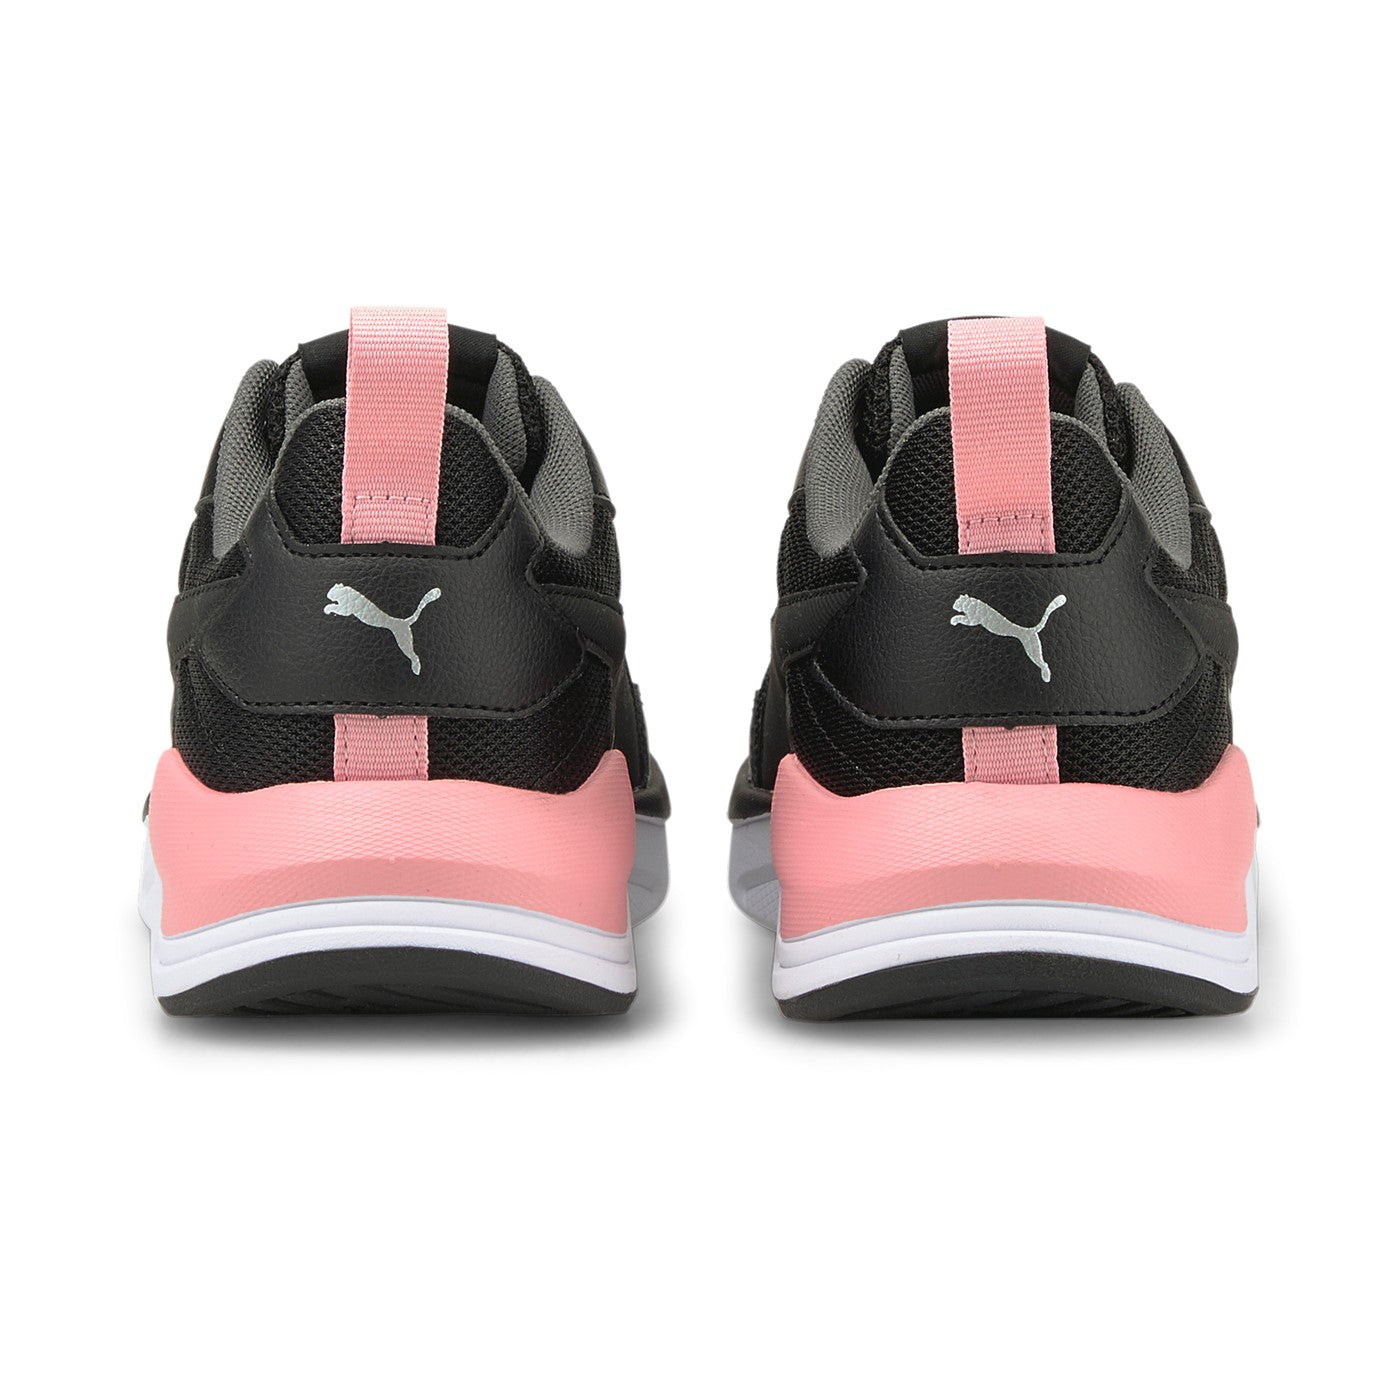 Puma scarpa da ginnastica da ragazza X-Ray Lite 374393 17 nero rosa